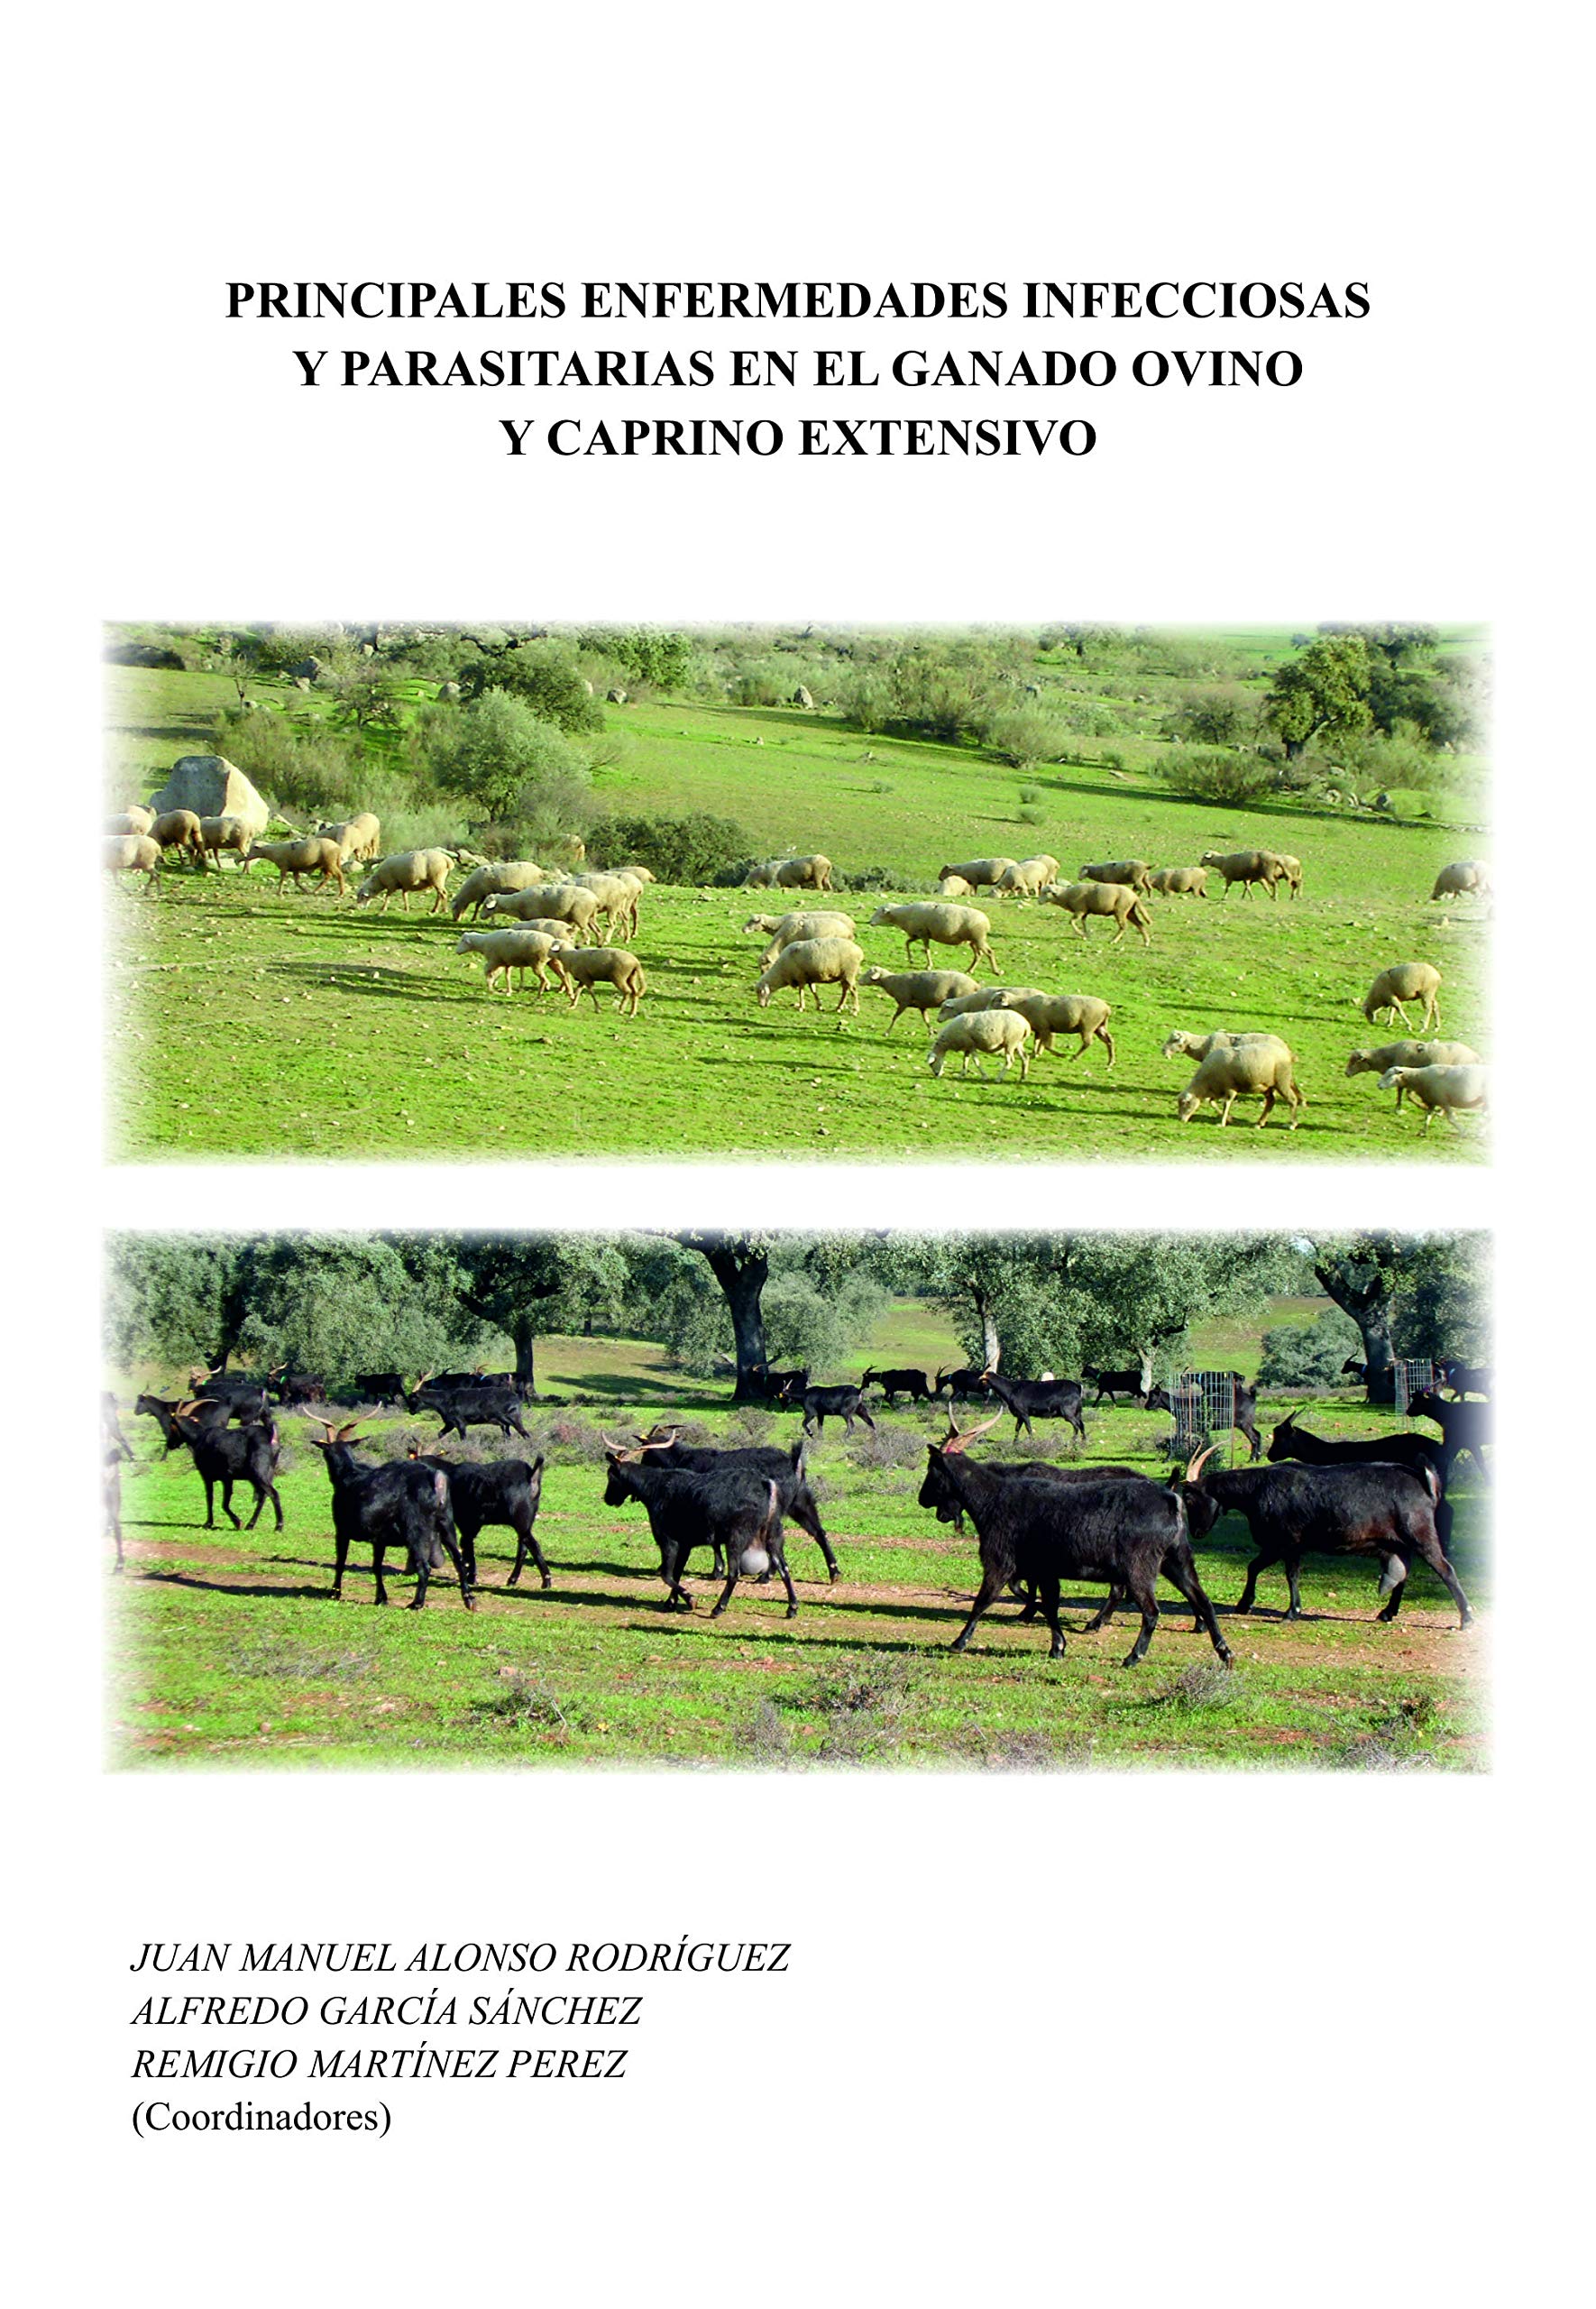 Imagen de portada del libro Principales enfermedades infecciosas y parasitarias en el ganado ovino y caprino extensivo